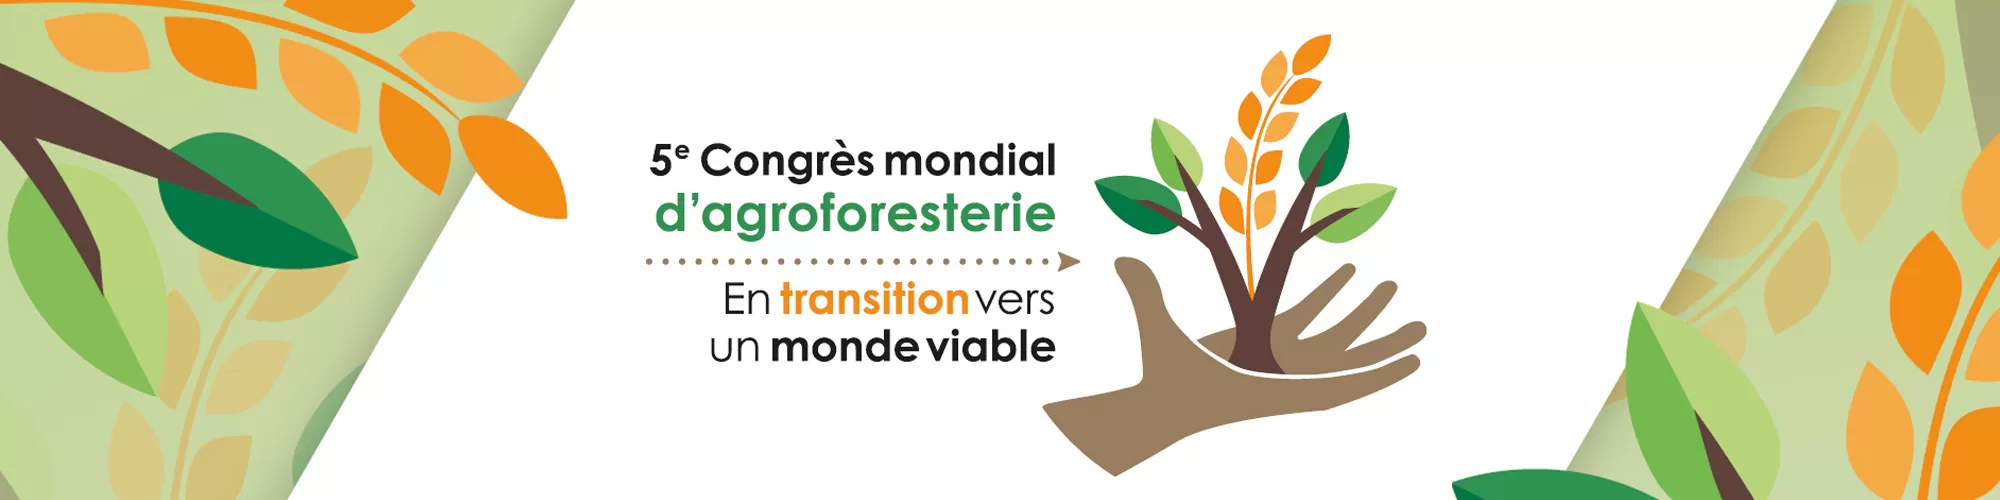 5e Congrès mondial d'agroforesterie | En transition vers un monde viable